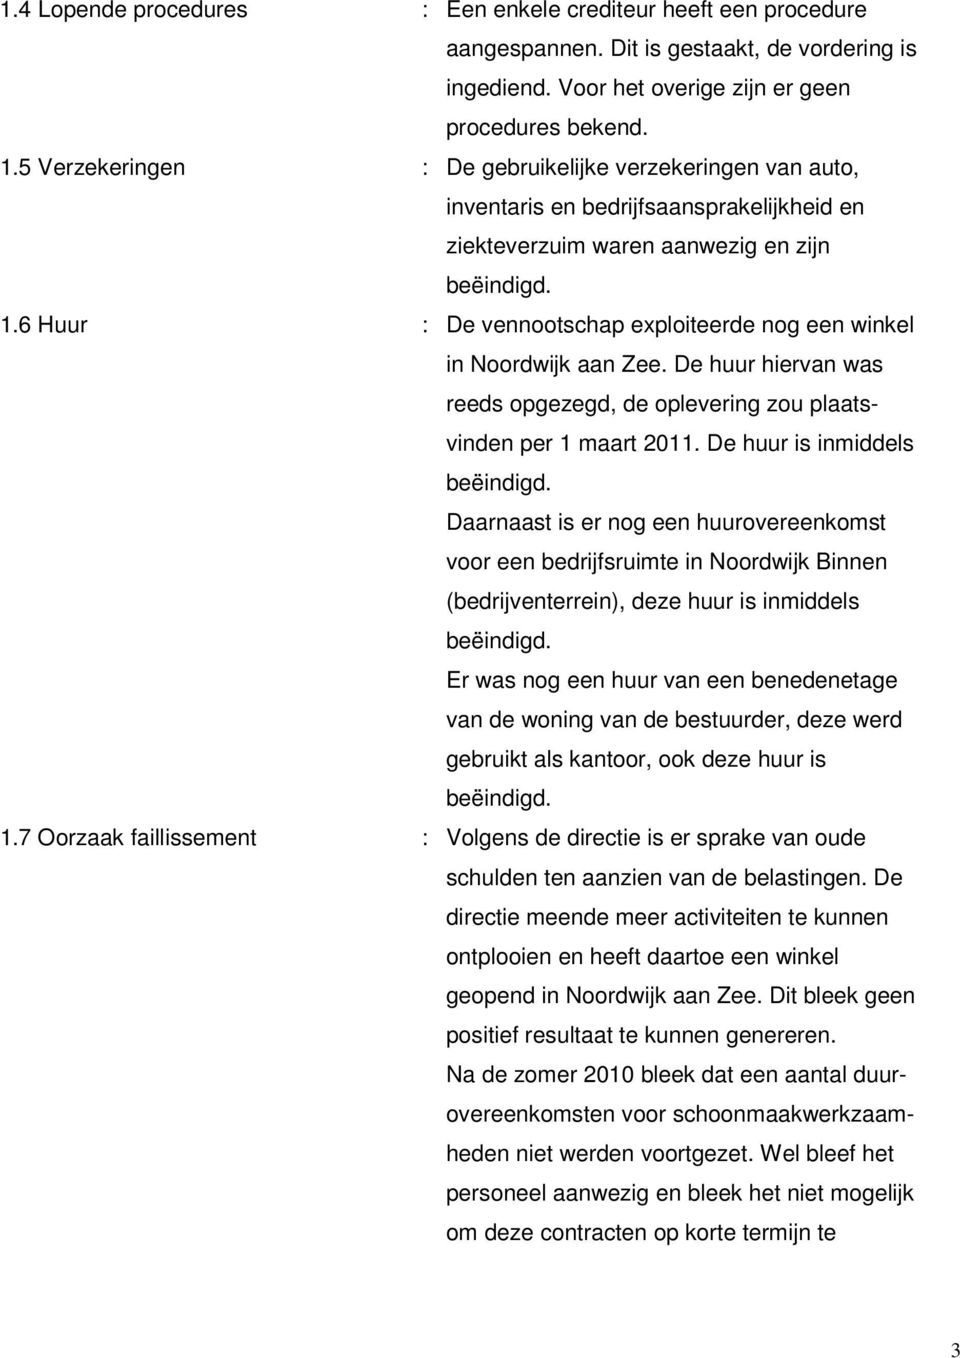 6 Huur : De vennootschap exploiteerde nog een winkel in Noordwijk aan Zee. De huur hiervan was reeds opgezegd, de oplevering zou plaatsvinden per 1 maart 2011. De huur is inmiddels beëindigd.